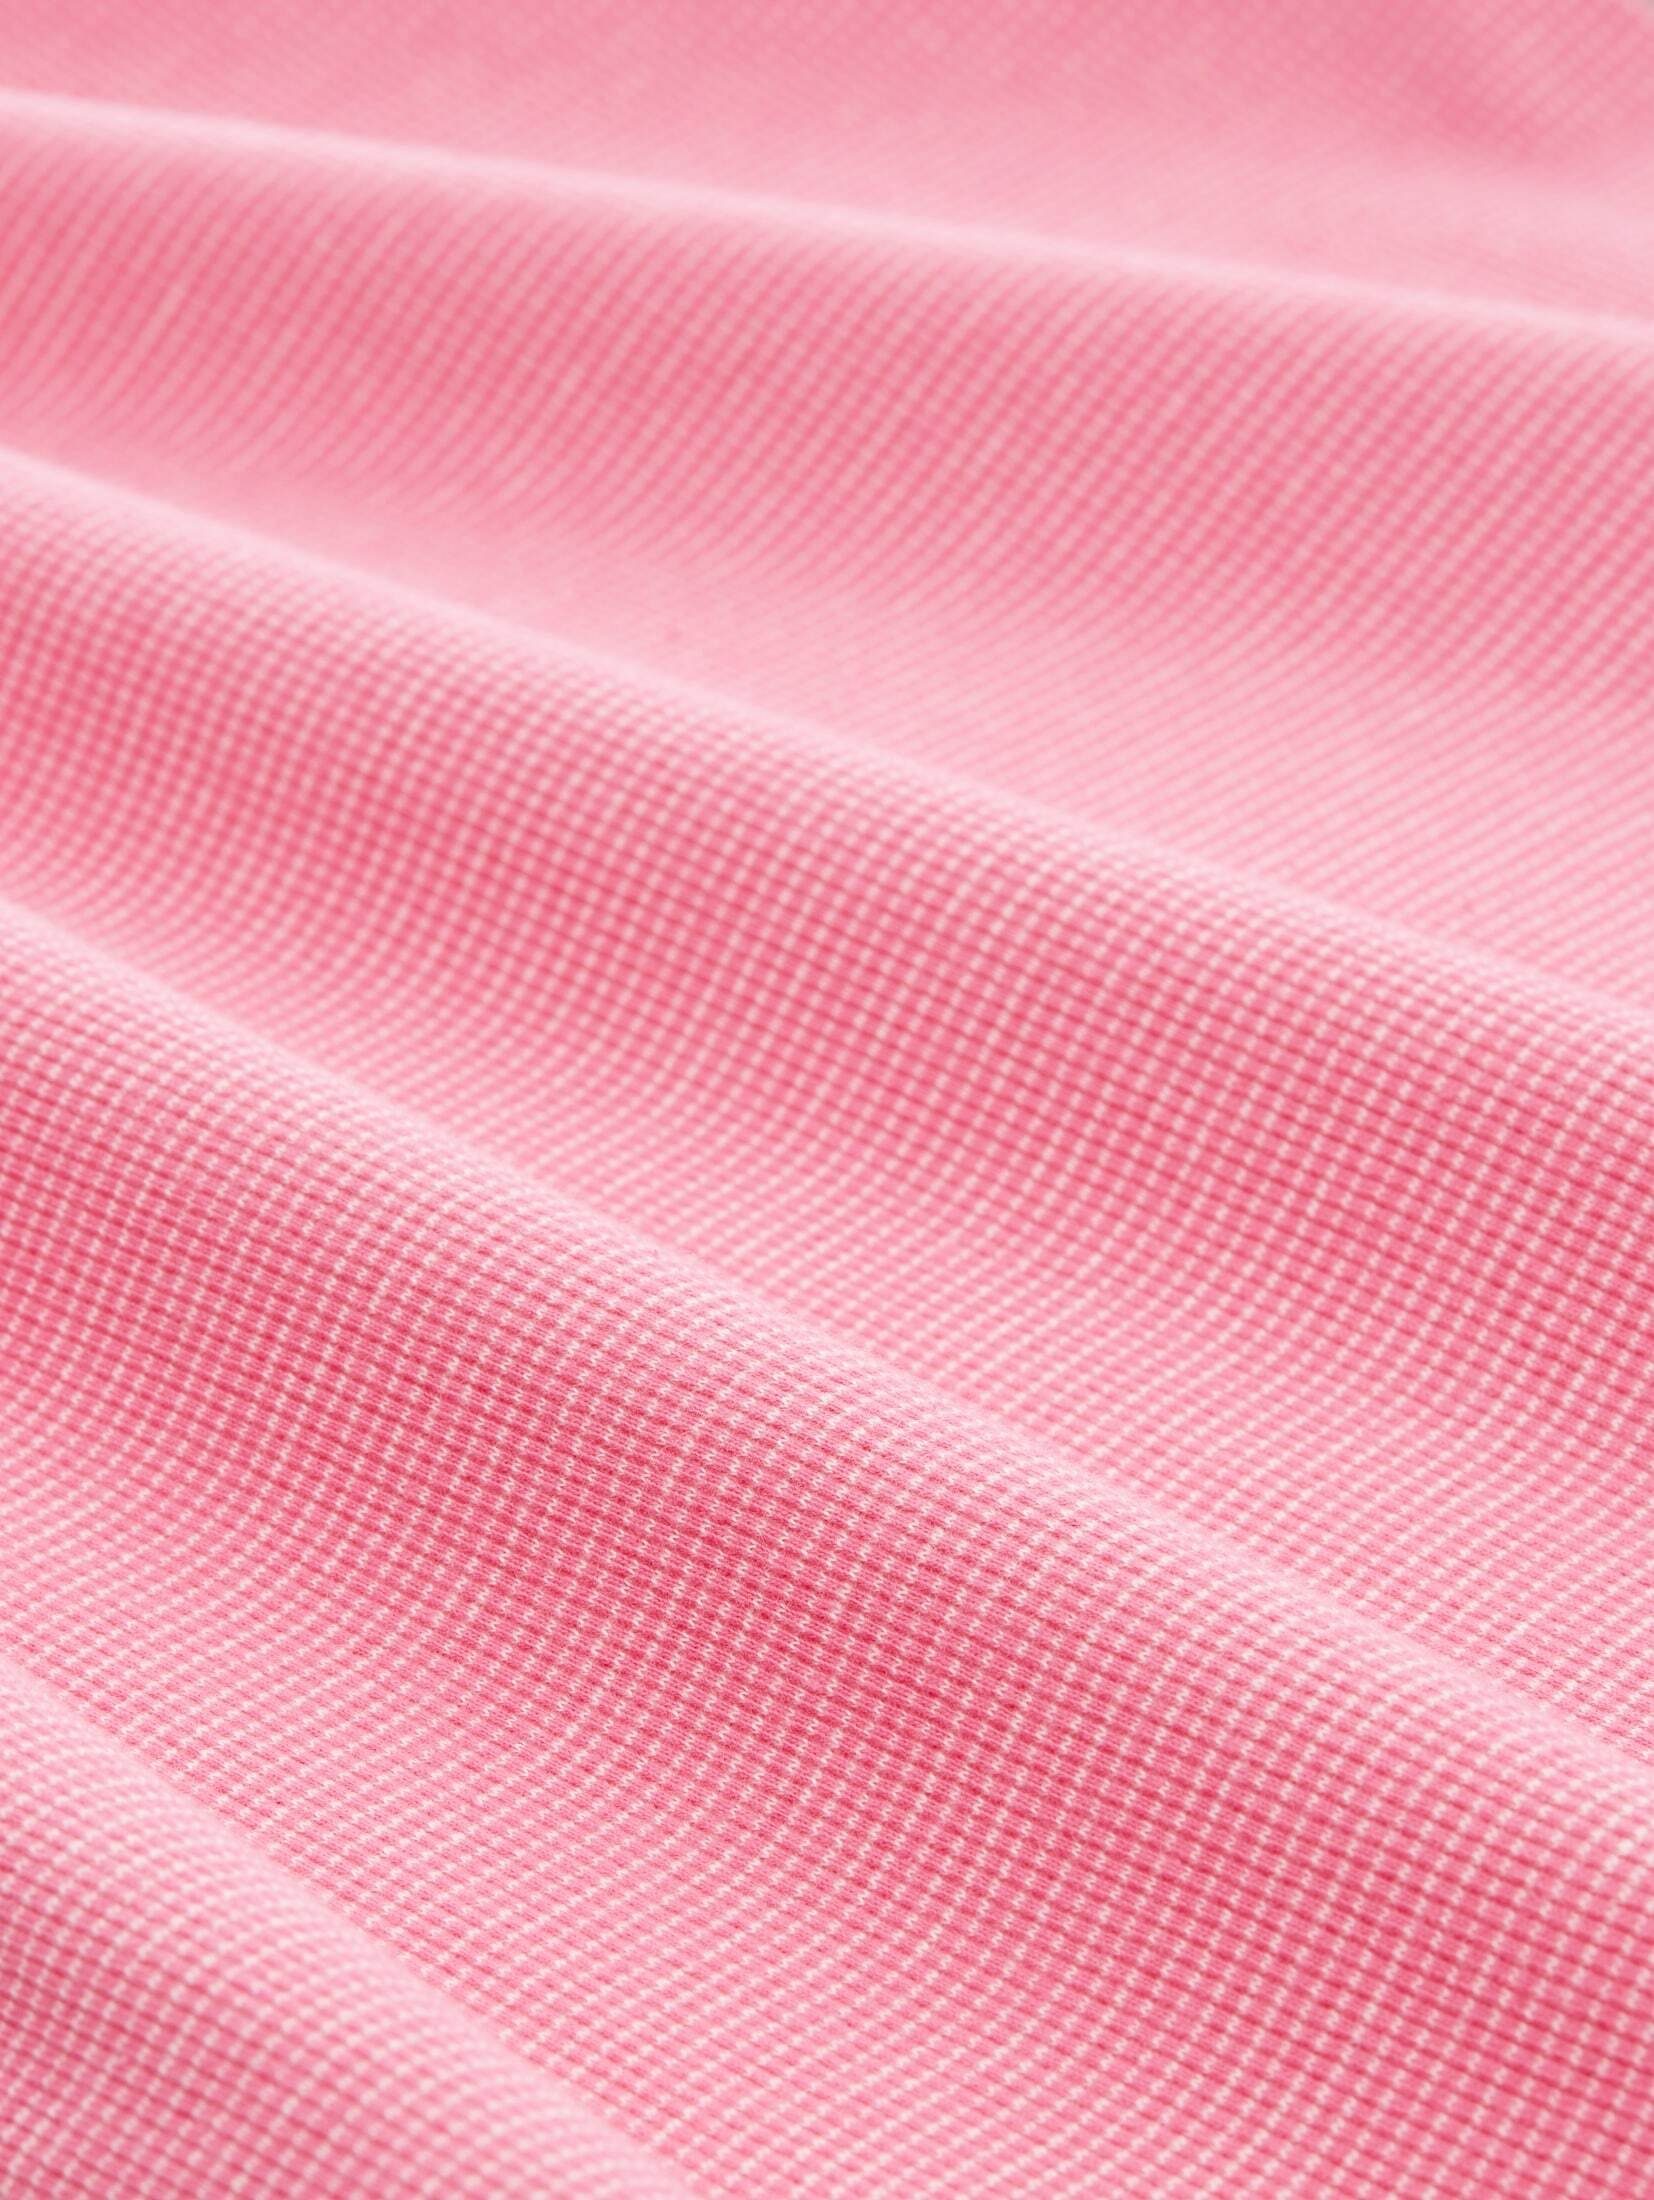 TOM ck offwhite pink Langarmshirt stripe T-Shirt mit TAILOR Bio-Baumwolle